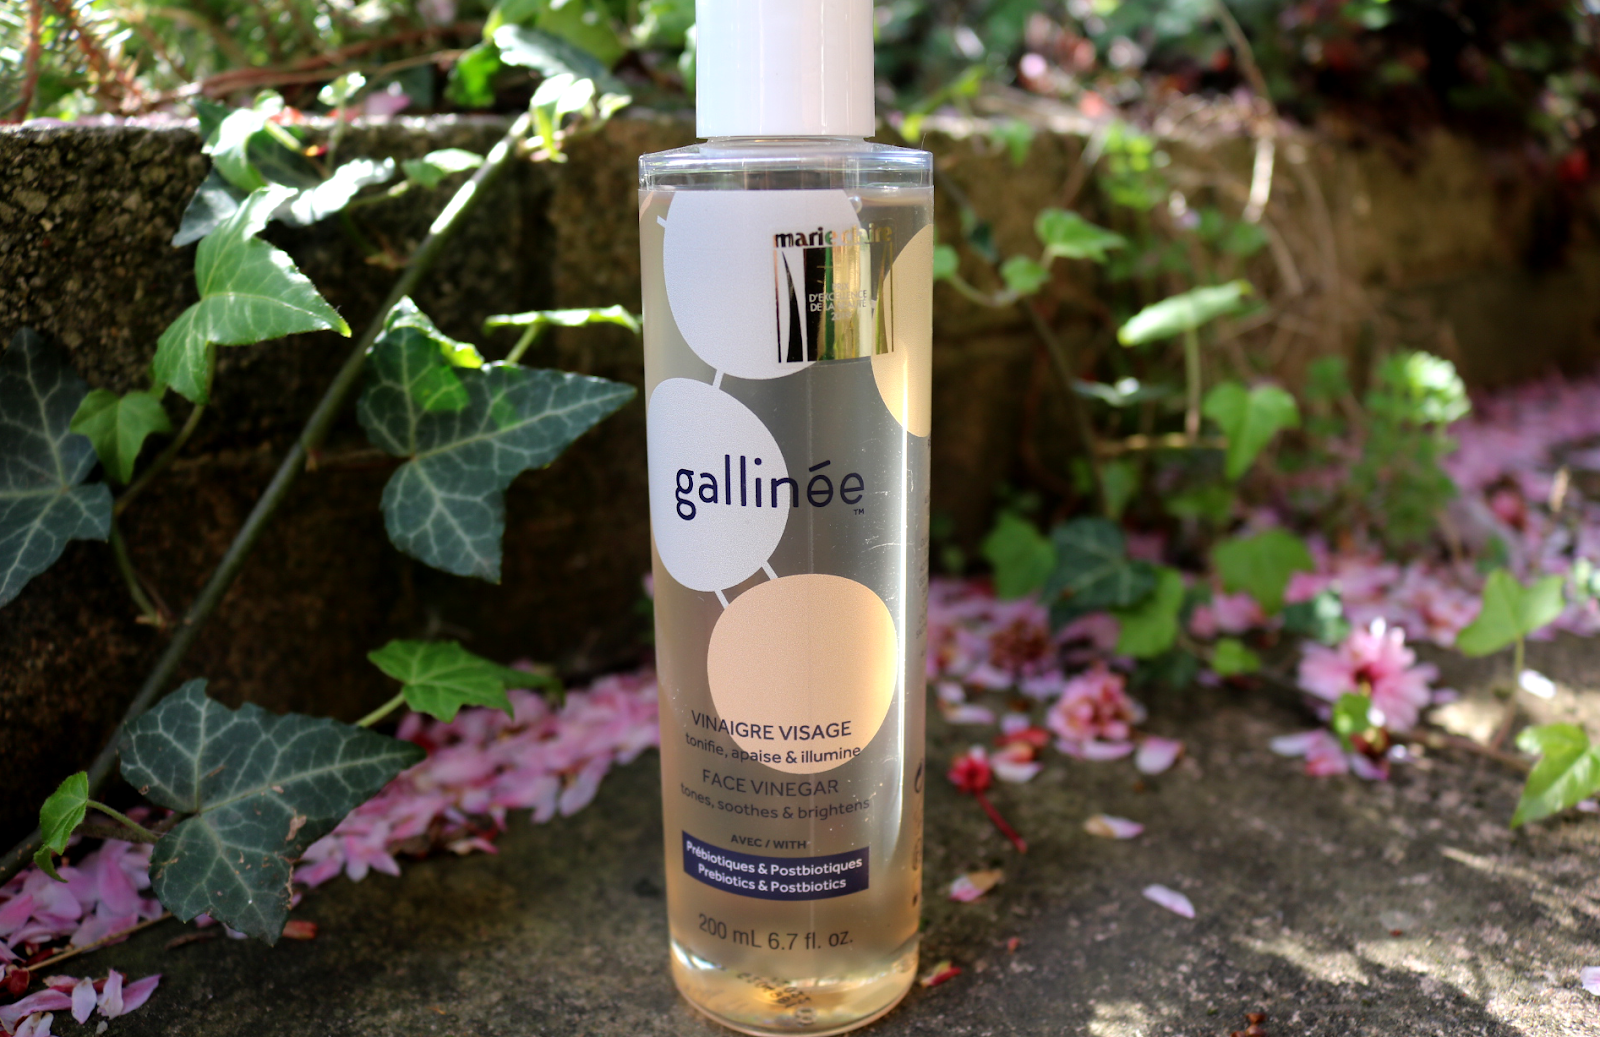 Gallinee Face Vinegar